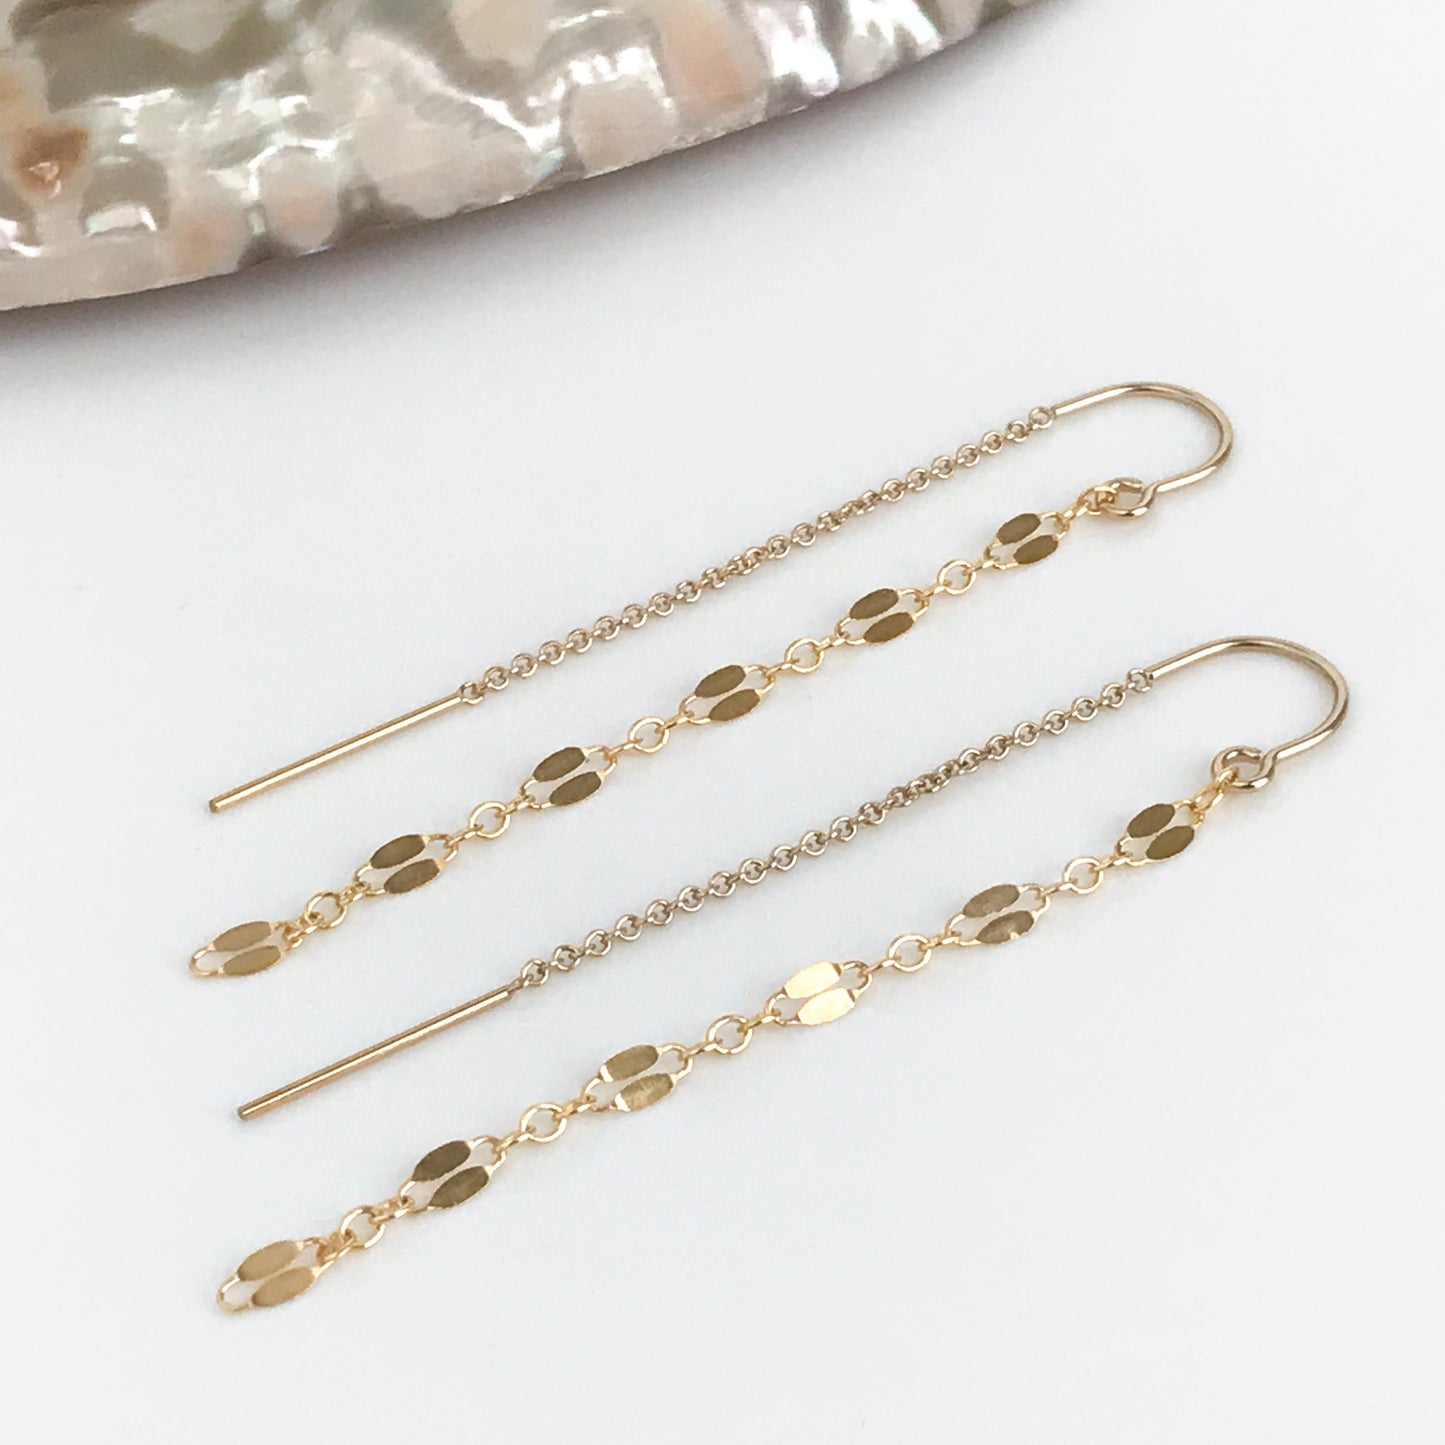 Gold Threader Earrings - Long Chain Earrings